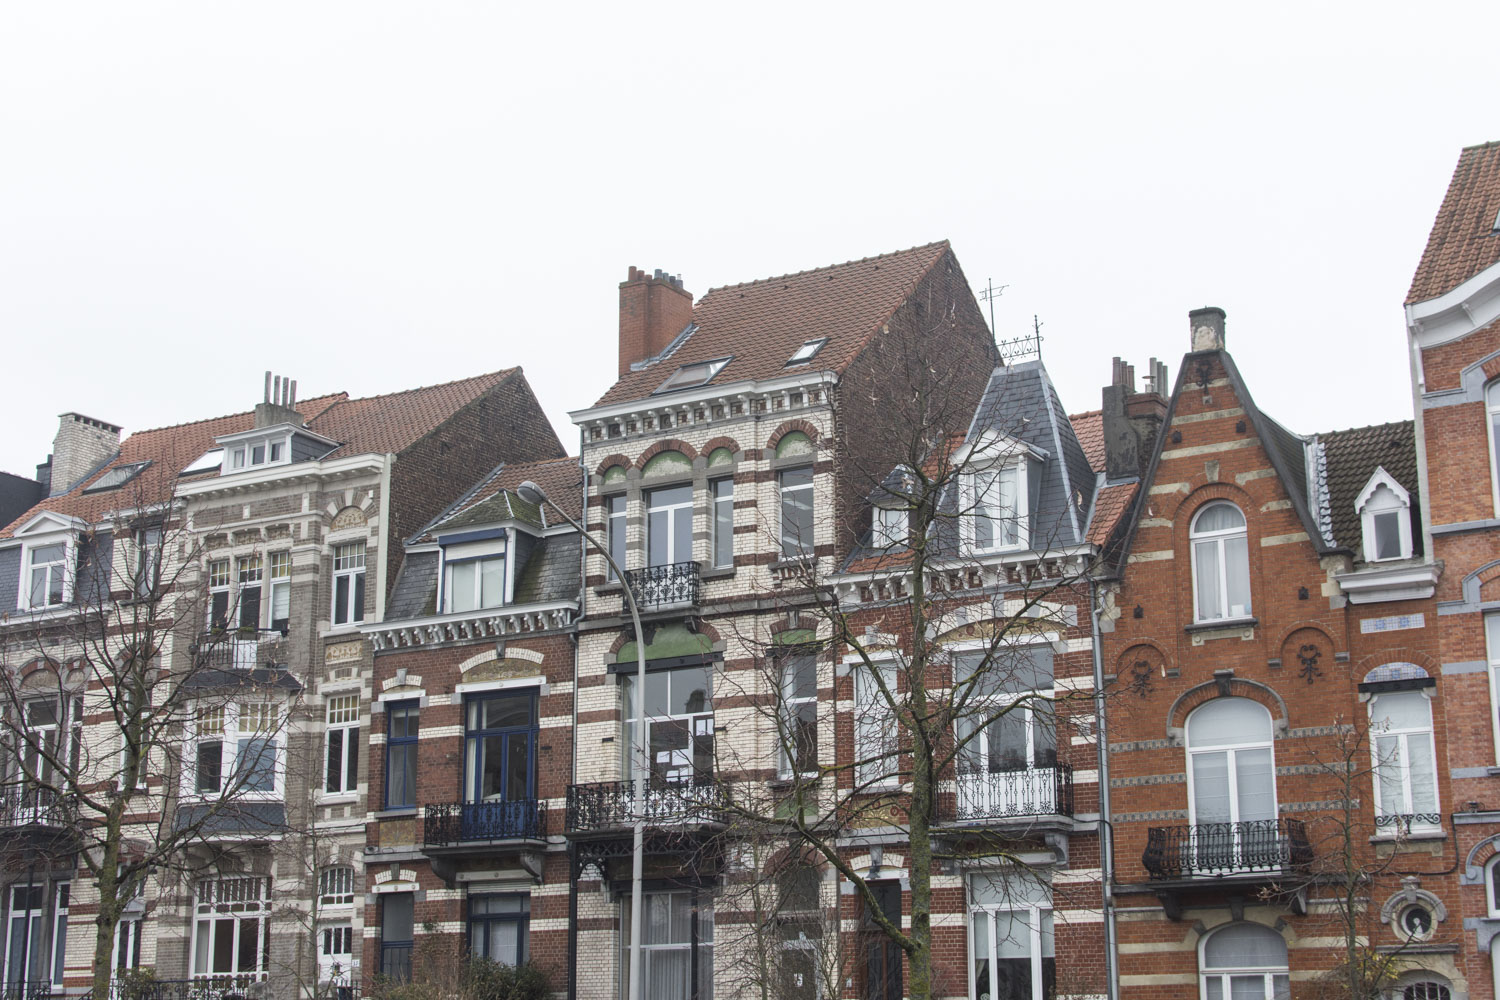 Sur la place de la mairie, juste à côté de l’institut, vous pouvez observer des maisons dans un style typique flamand. Style architectural que vous retrouvez aussi à Lille, qui fut jadis la capitale des Flandres